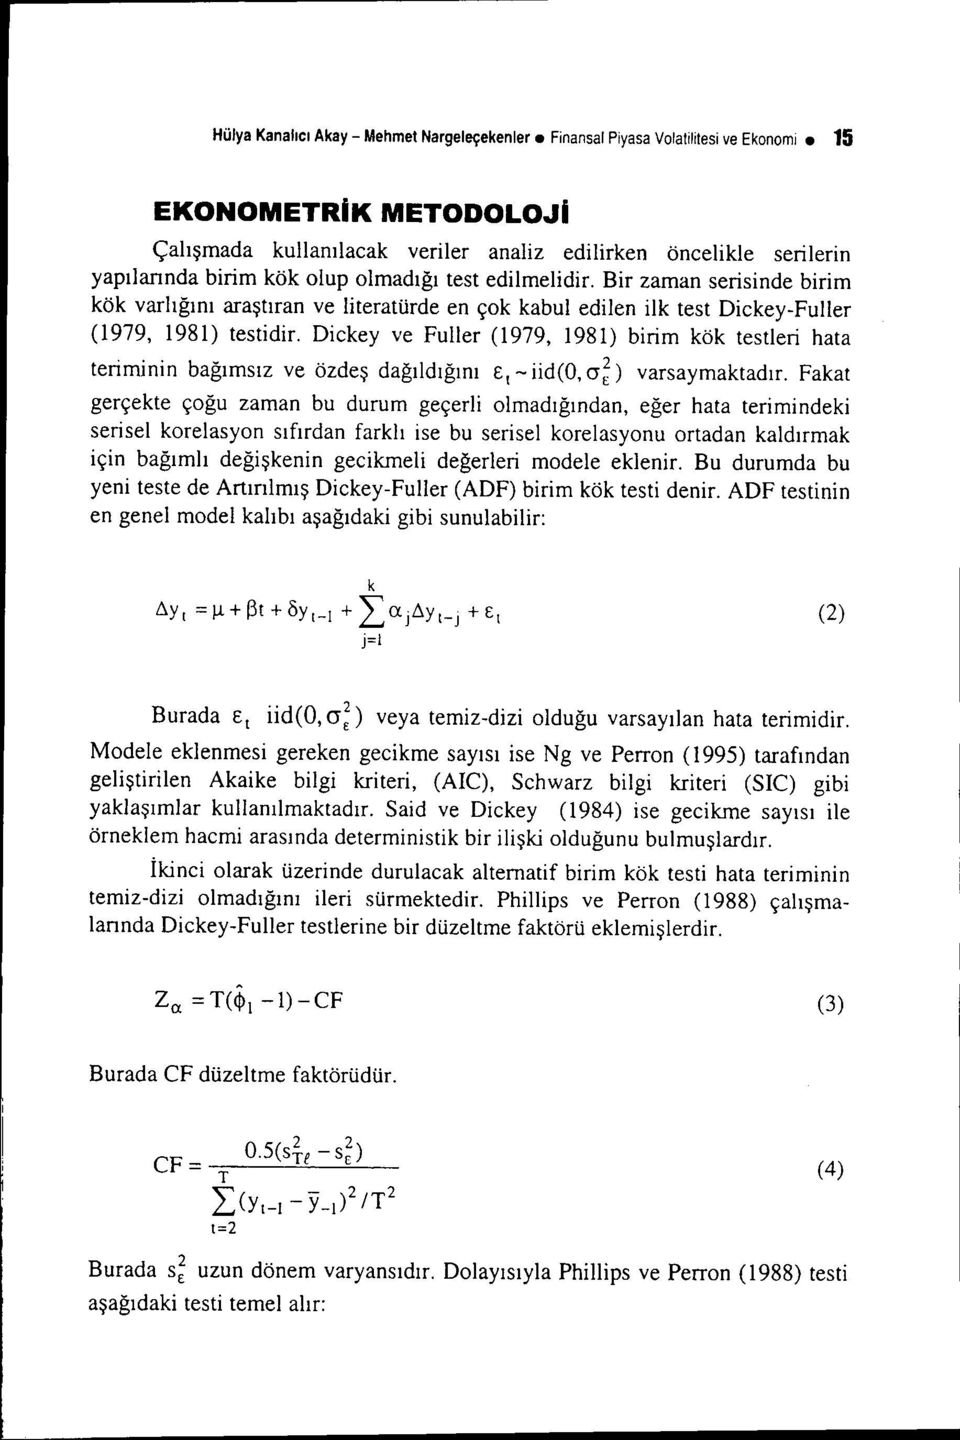 Dickey ve Fuller (1979, 1981) birim kök testleri hata teriminin bağımsız ve özdeş dağıldığını Et - iid(o, (J~) varsaymaktadır.